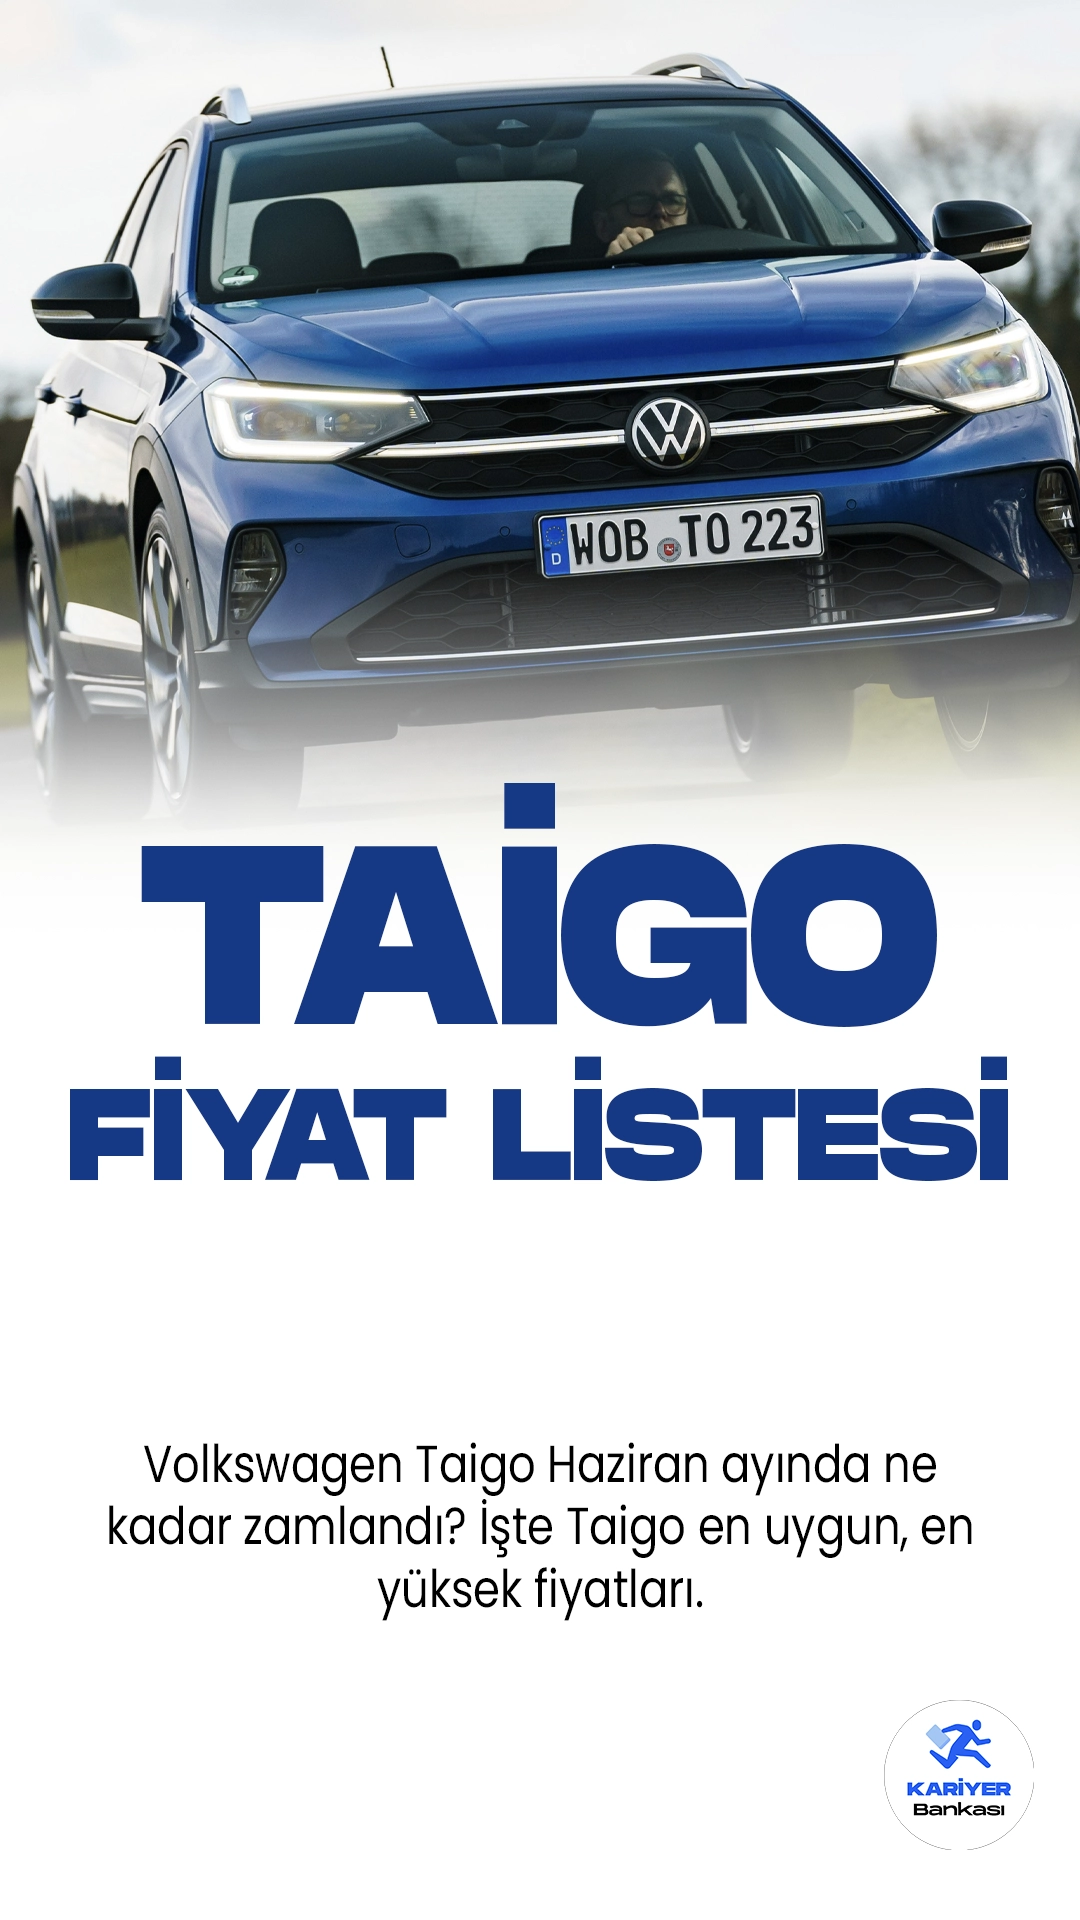 Volkswagen Taigo Haziran 2023 Fiyat Listesi Yayımlandı! Türkiye'de satılan en kaliteli araç markaları arasında yer alan Volkswagen, Taigo fiyat listesini paylaştı. Taigo güncel fiyatlarına dair detaylar bu haberimizde.